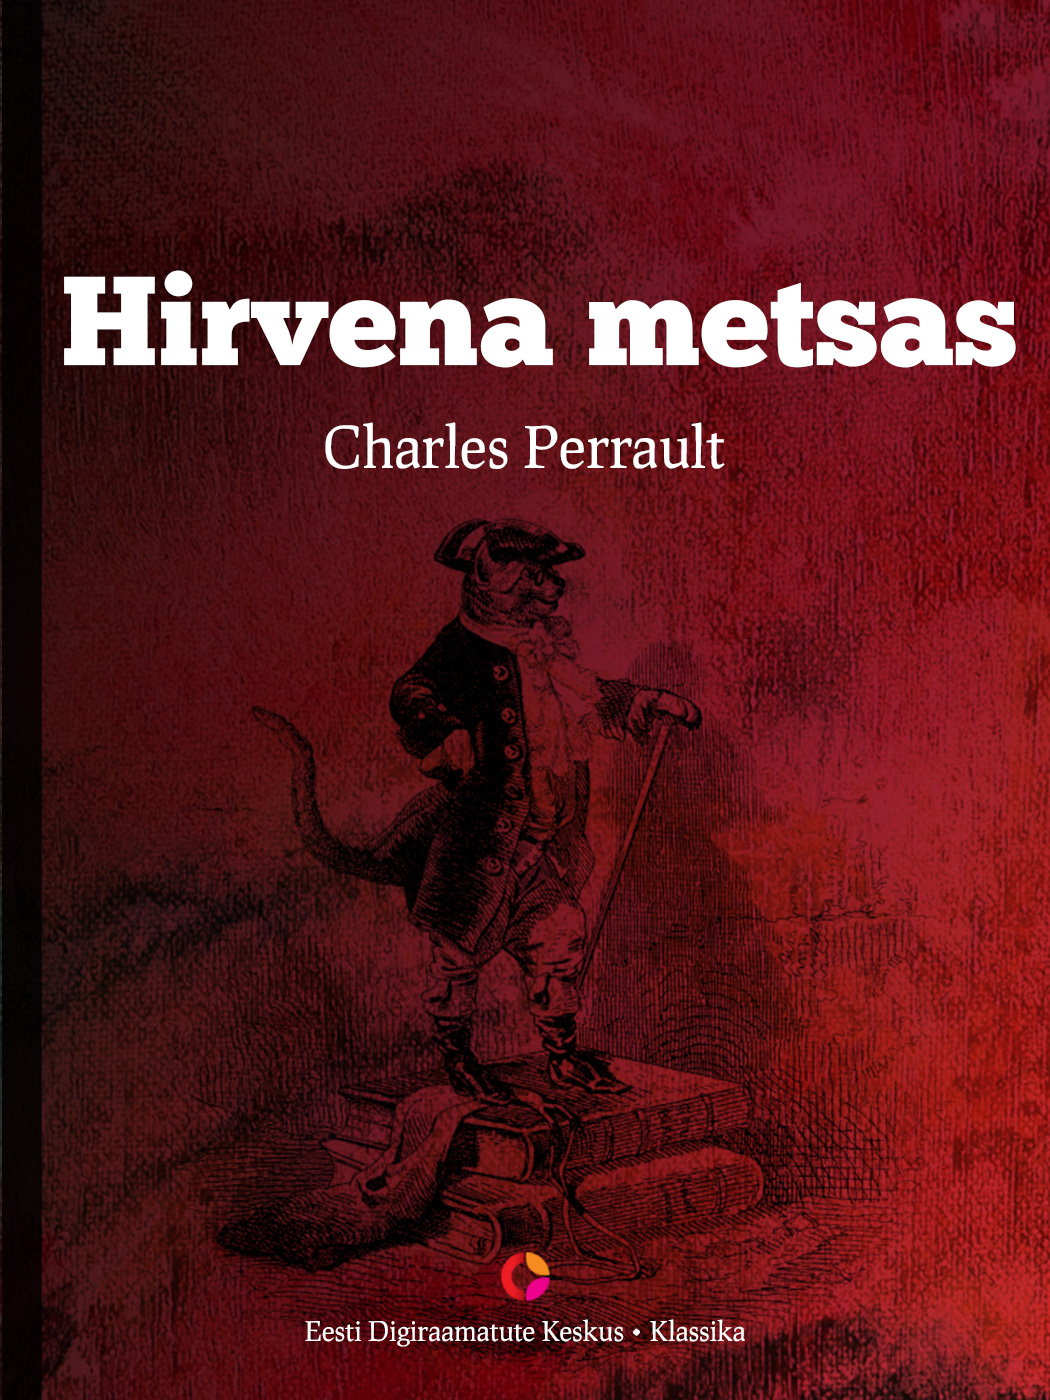 Книга Hirvena metsas из серии , созданная Charles Perrault, может относится к жанру Зарубежная старинная литература, Зарубежная классика, Сказки. Стоимость электронной книги Hirvena metsas с идентификатором 21184972 составляет 126.89 руб.